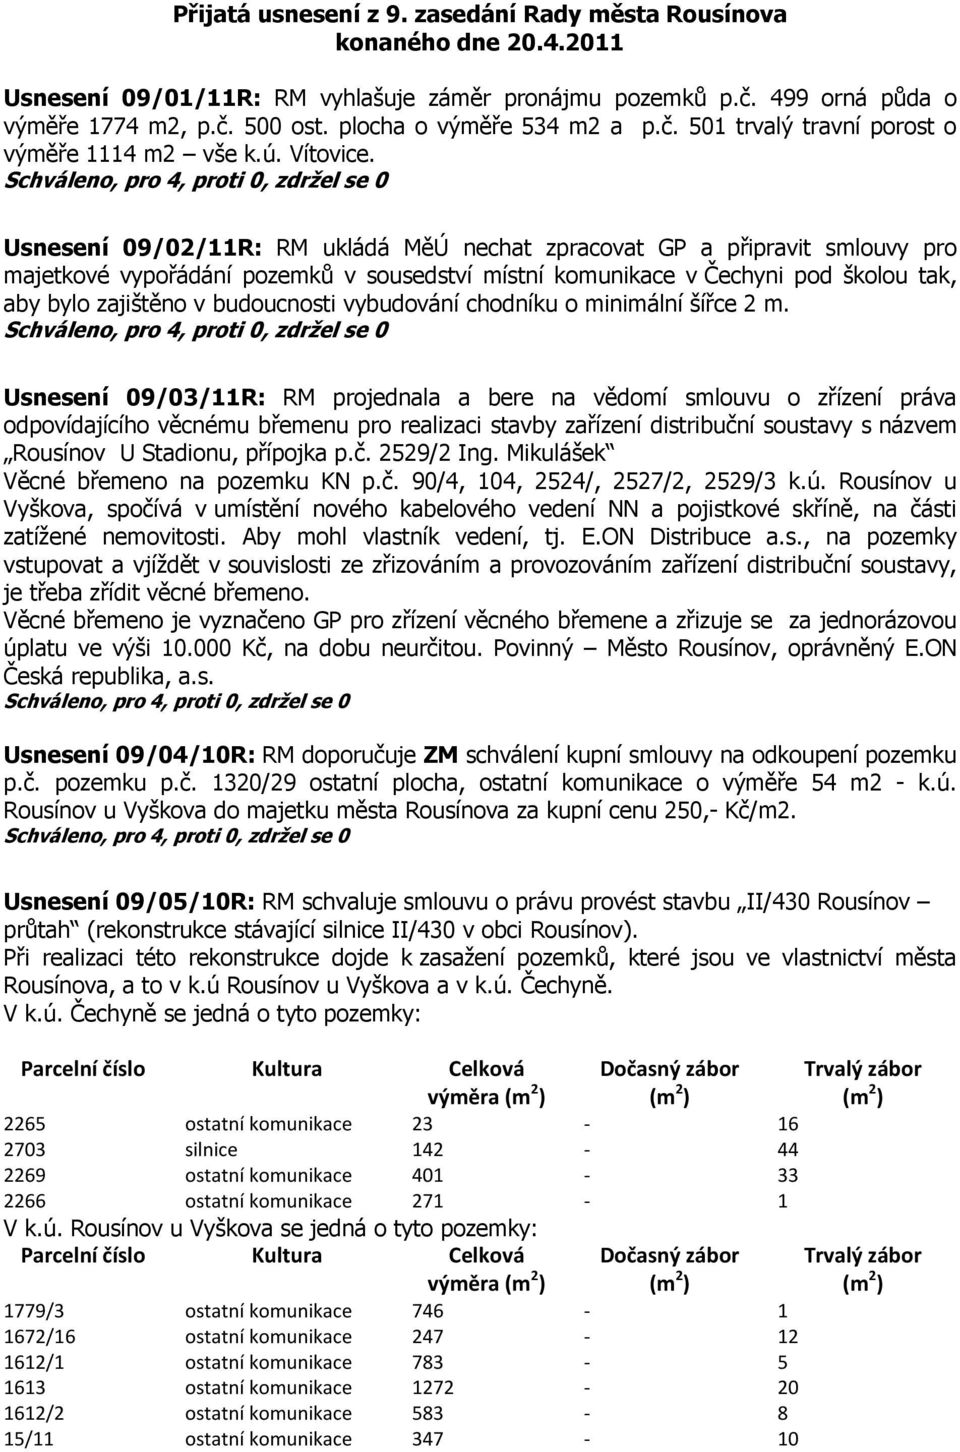 Usnesení 09/02/11R: RM ukládá MěÚ nechat zpracovat GP a připravit smlouvy pro majetkové vypořádání pozemků v sousedství místní komunikace v Čechyni pod školou tak, aby bylo zajištěno v budoucnosti